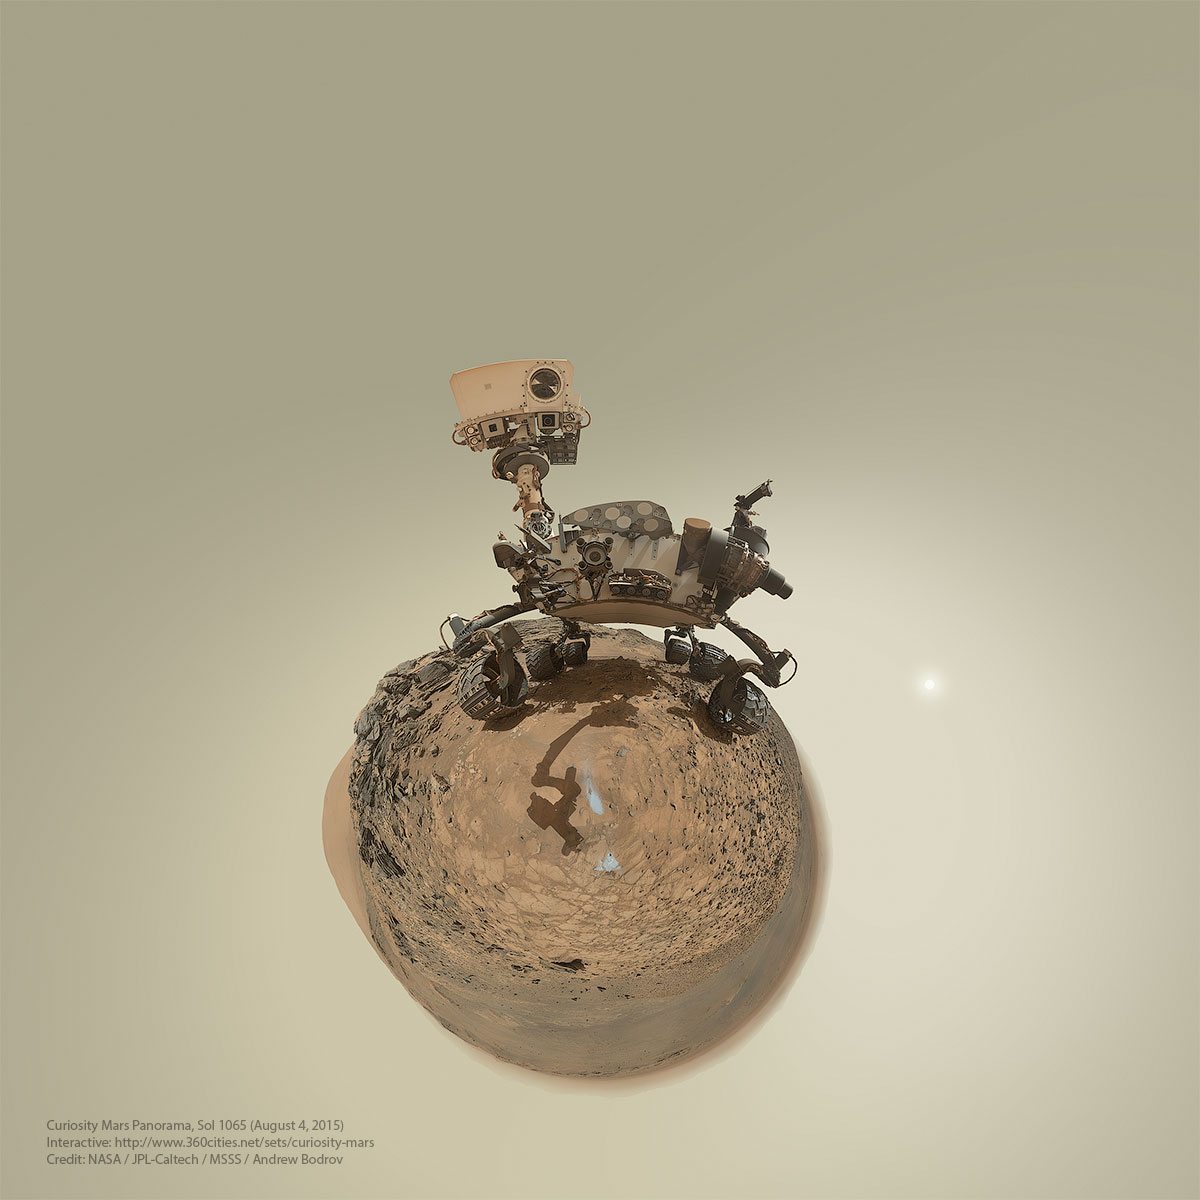 La petite planète de Curiosity